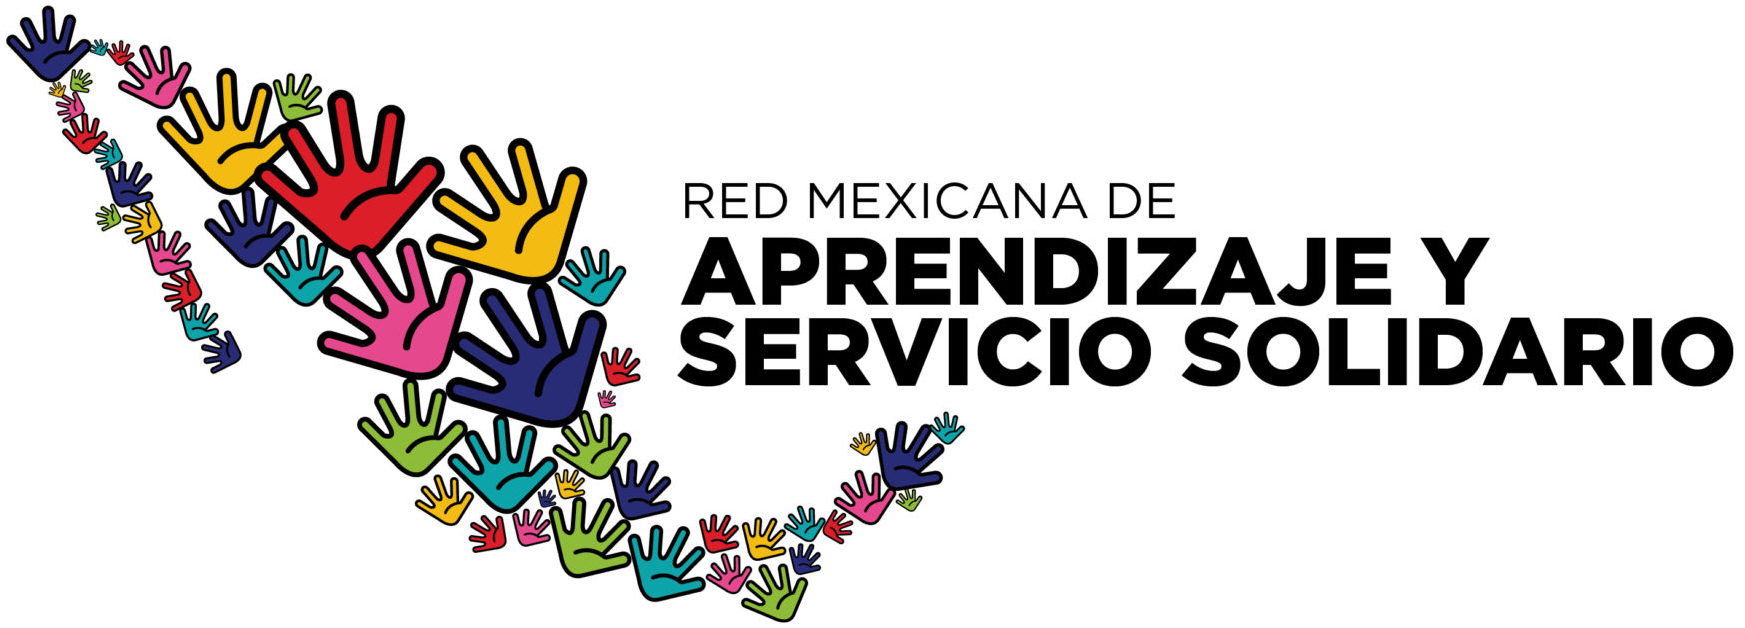 Red Mexicana de Aprendizaje y Servicio Solidario